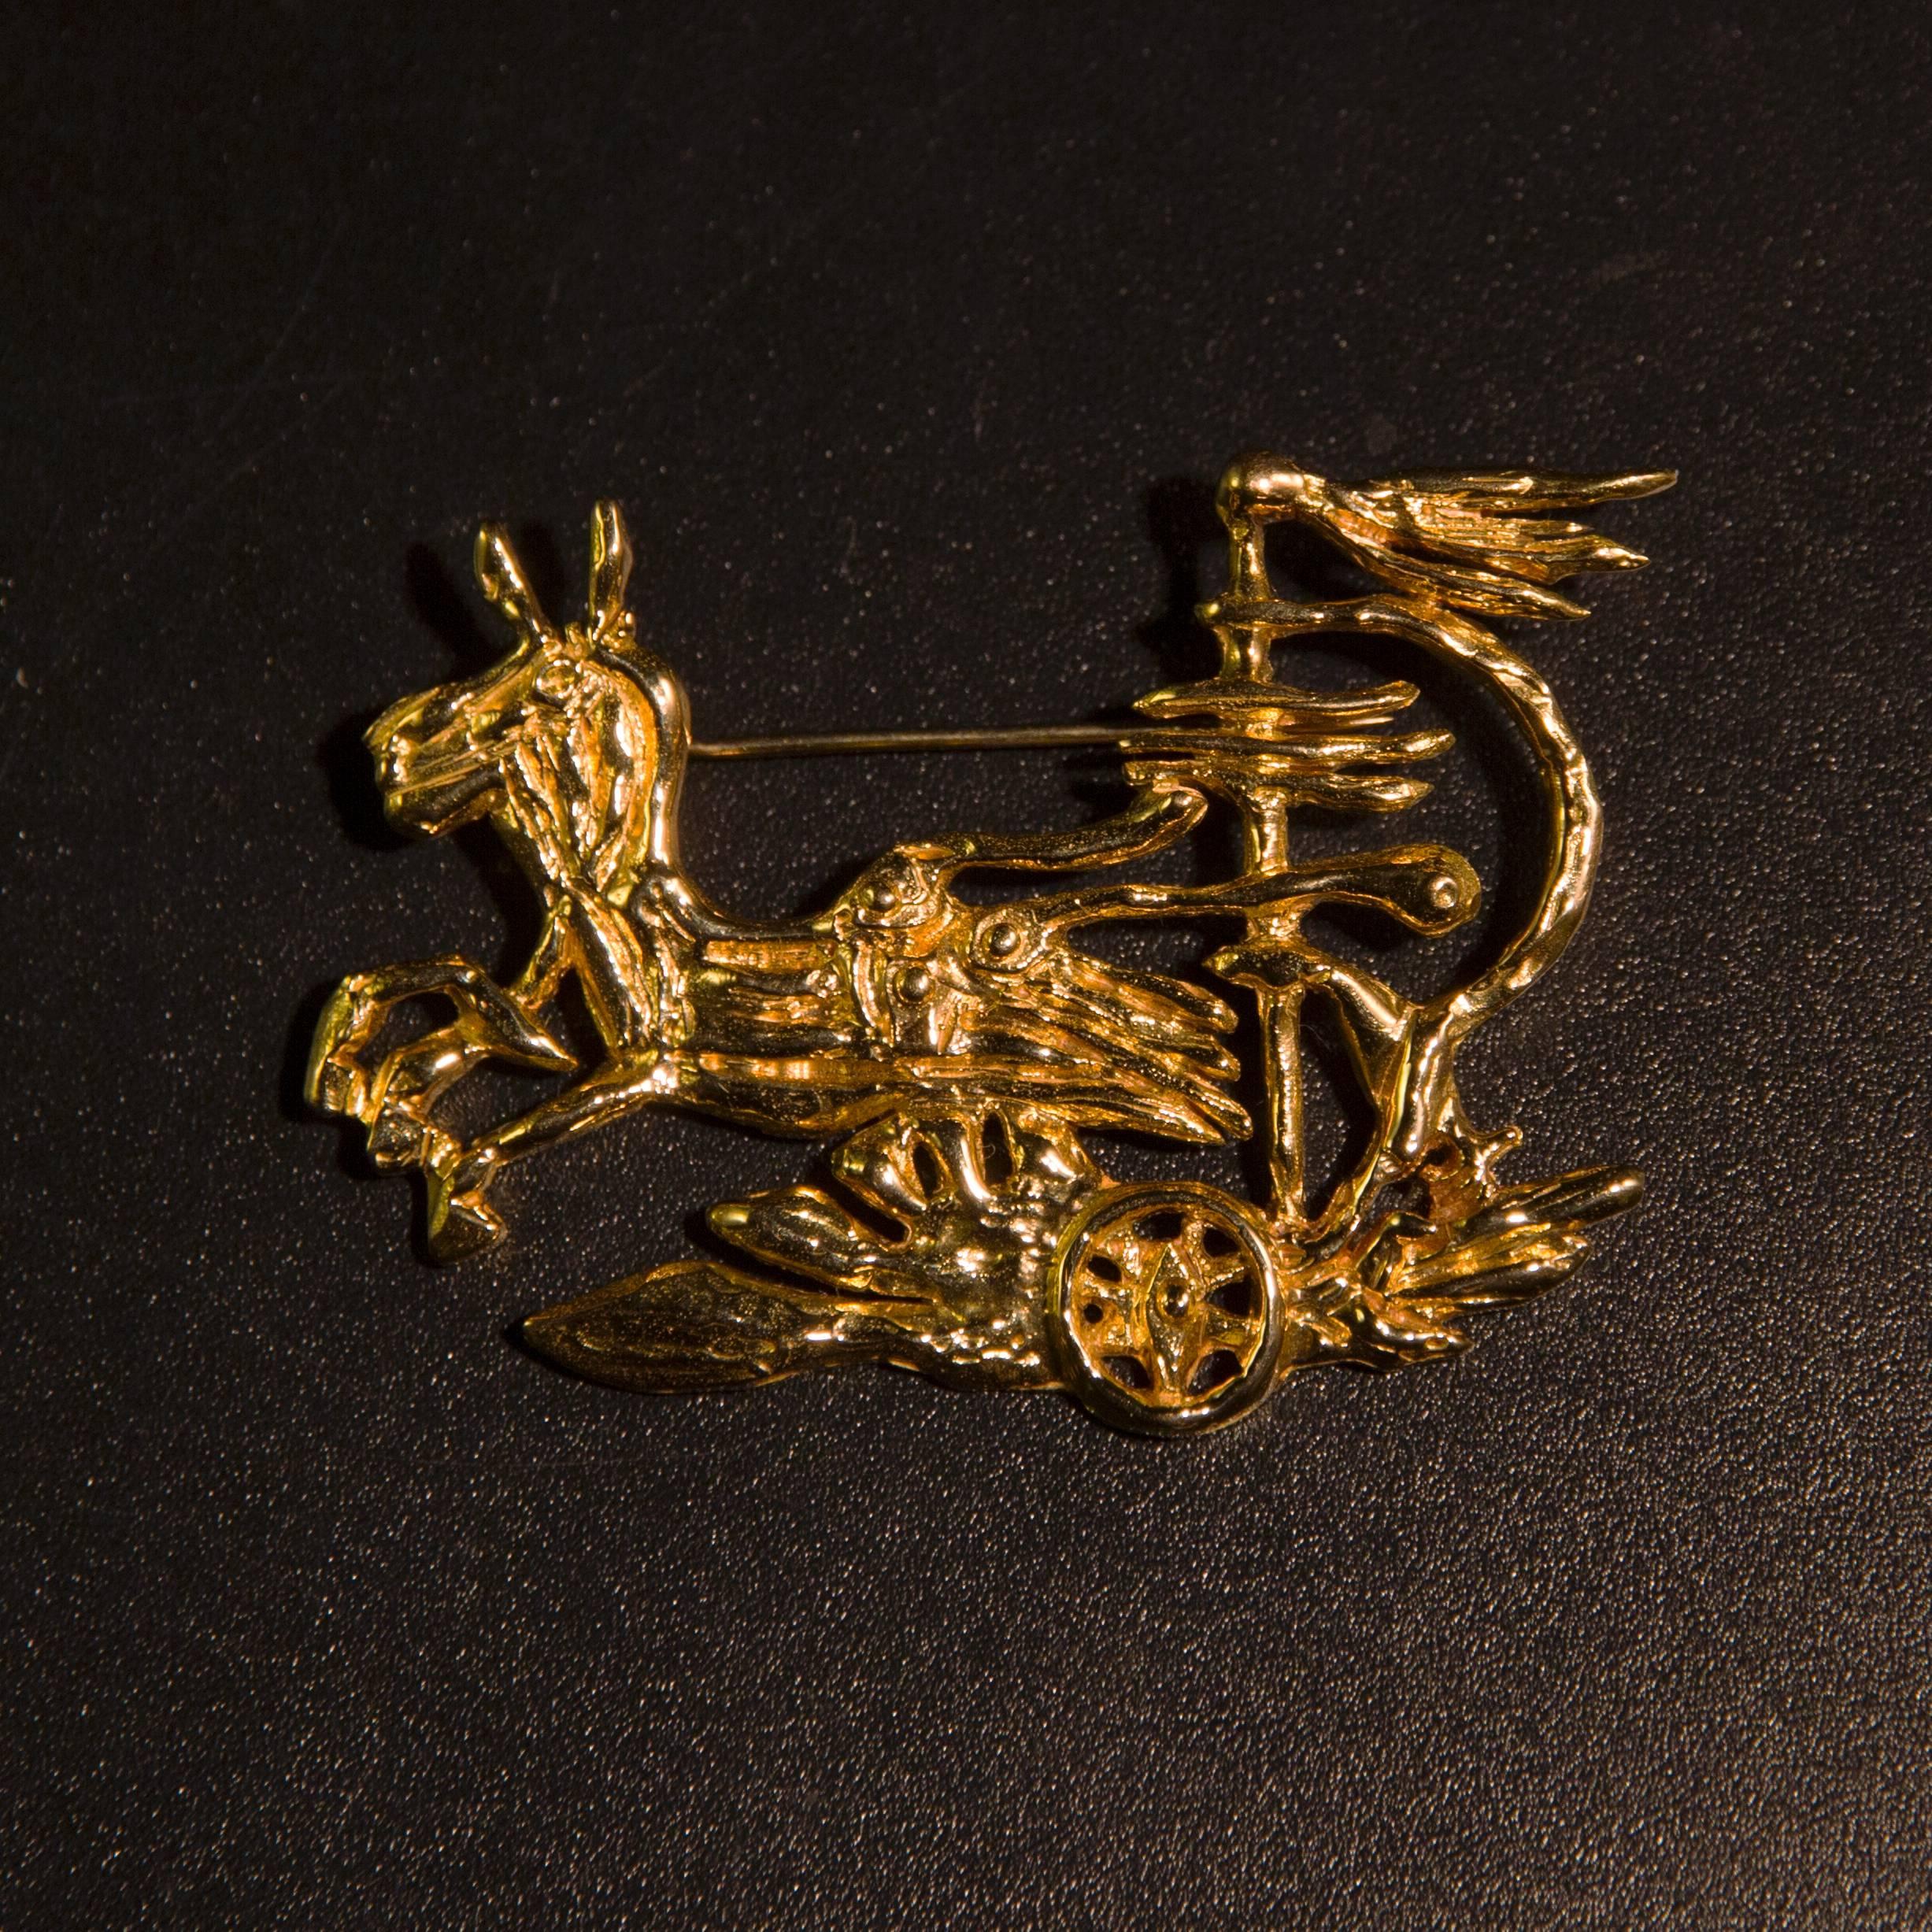 Expressversand während des Lockdowns versichert

Schöne und seltene Brosche aus 18K Gold (getestet) von Georges Braque (1882-1963), dem Erfinder des Kubismus.
Diese Brosche zeigt Medea auf ihrem Streitwagen.
Es ist signiert 